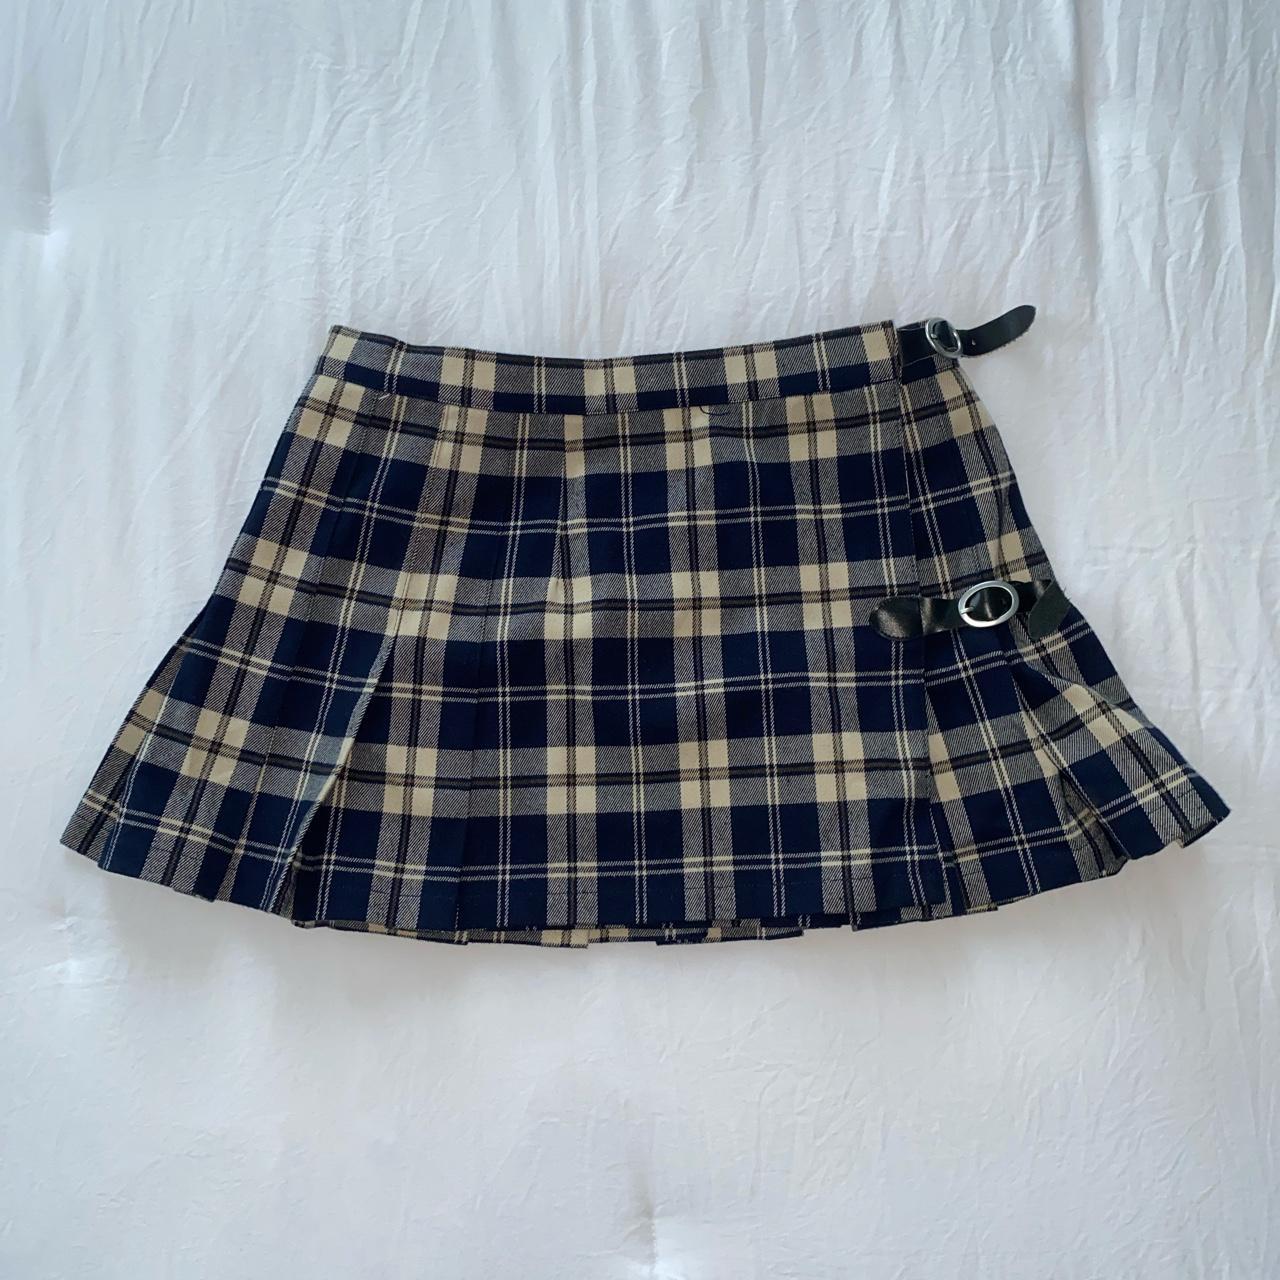 Brandy Melville Women's Skirt